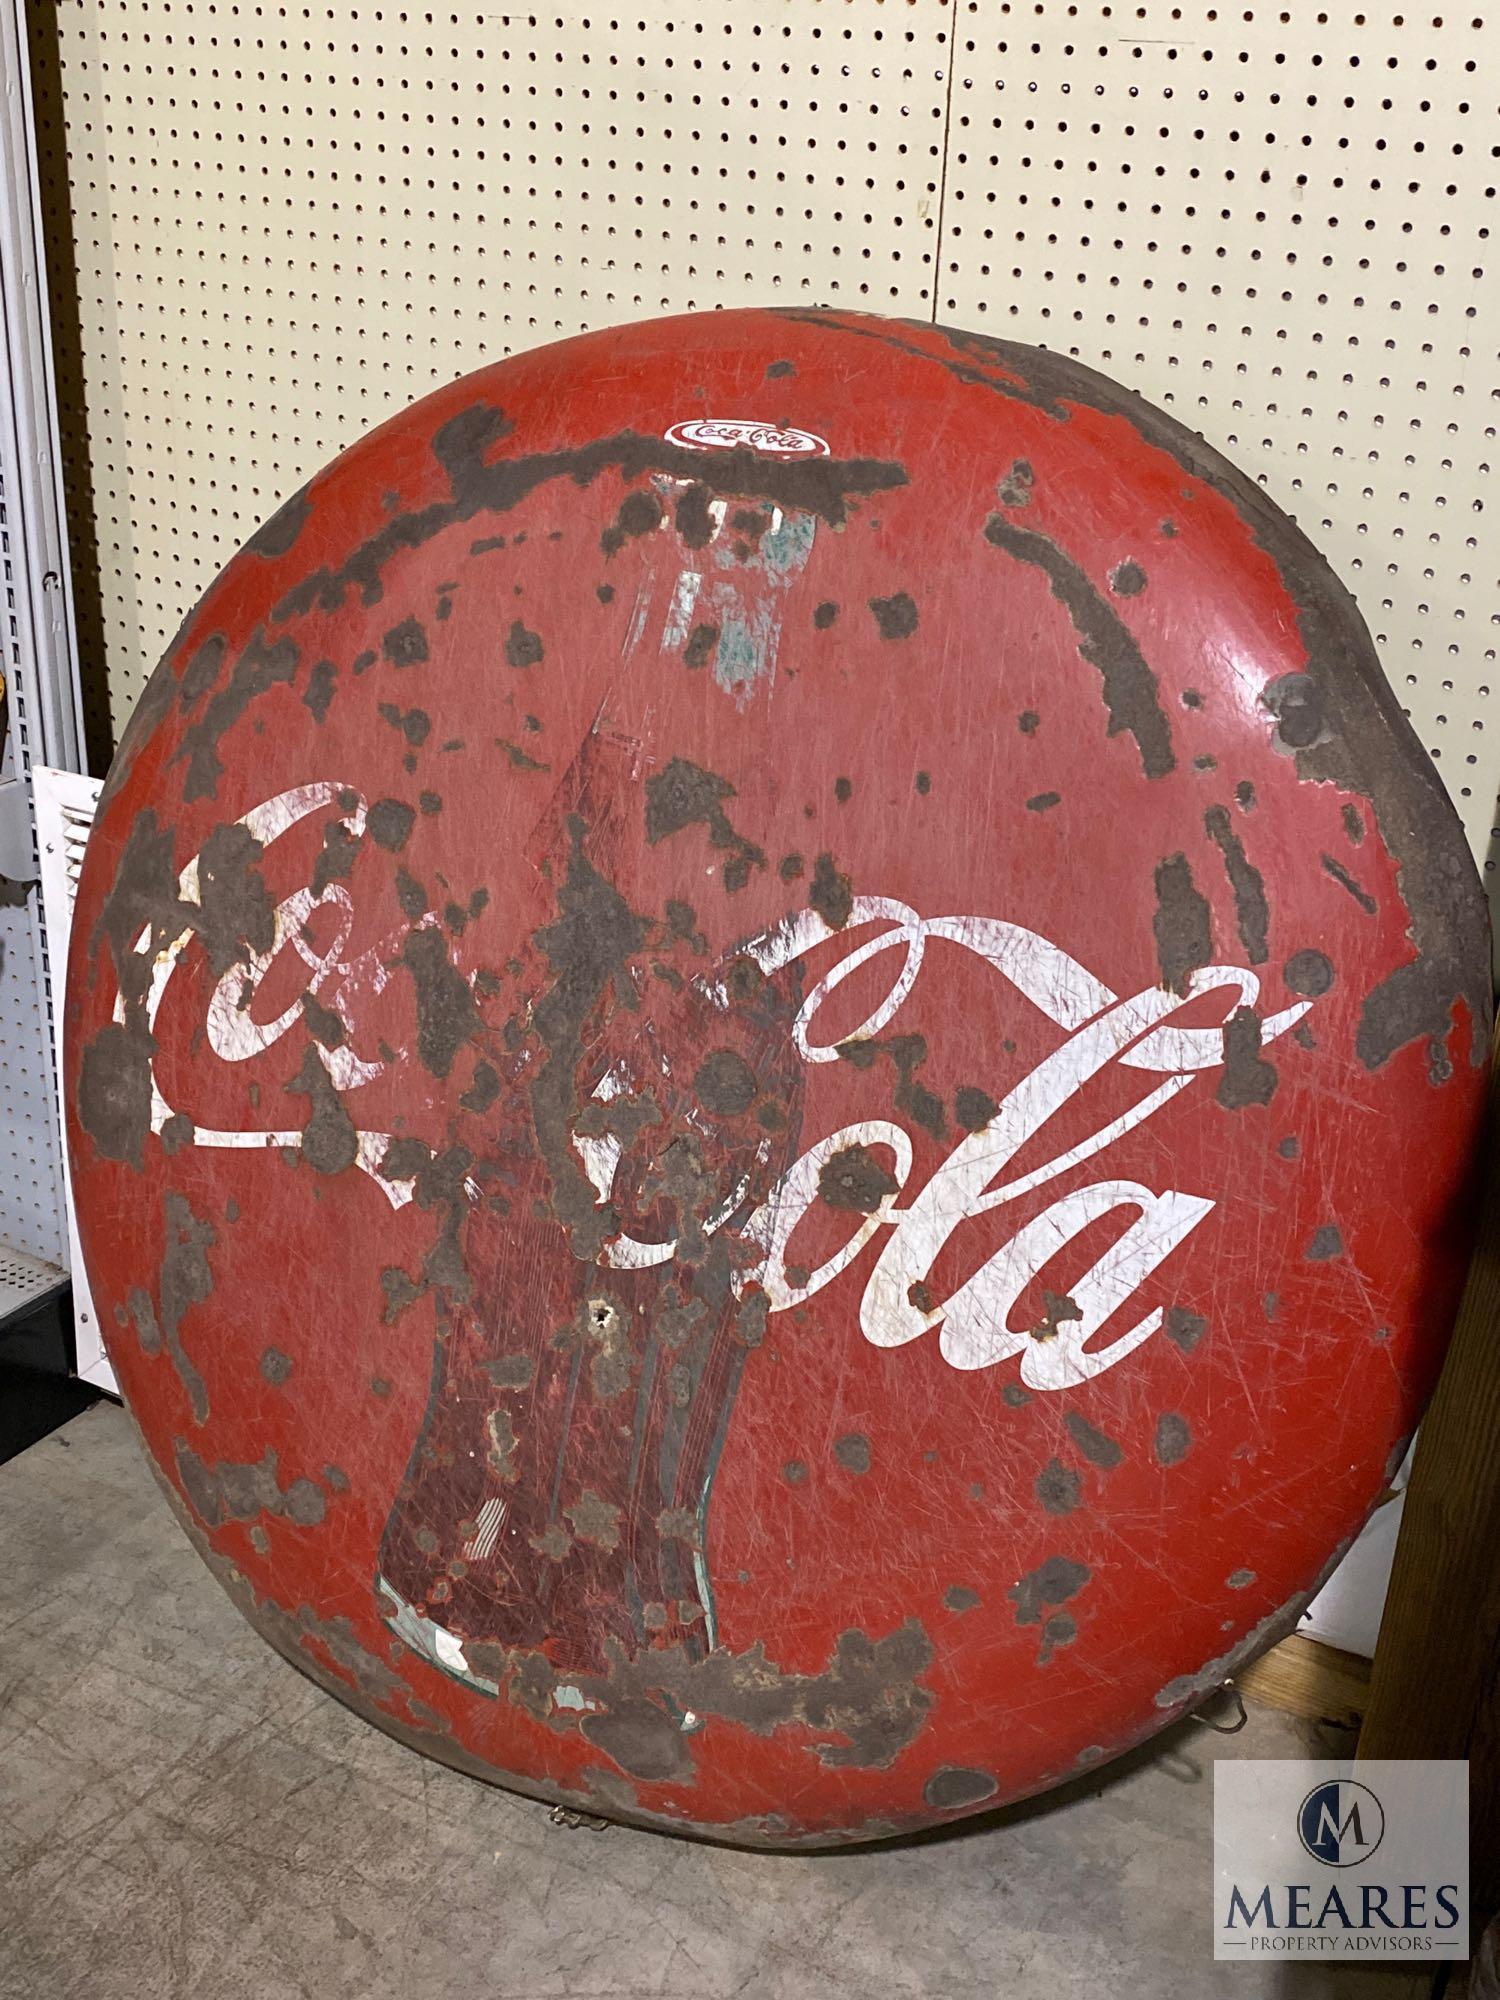 Vintage Coca-Cola Advertising Button